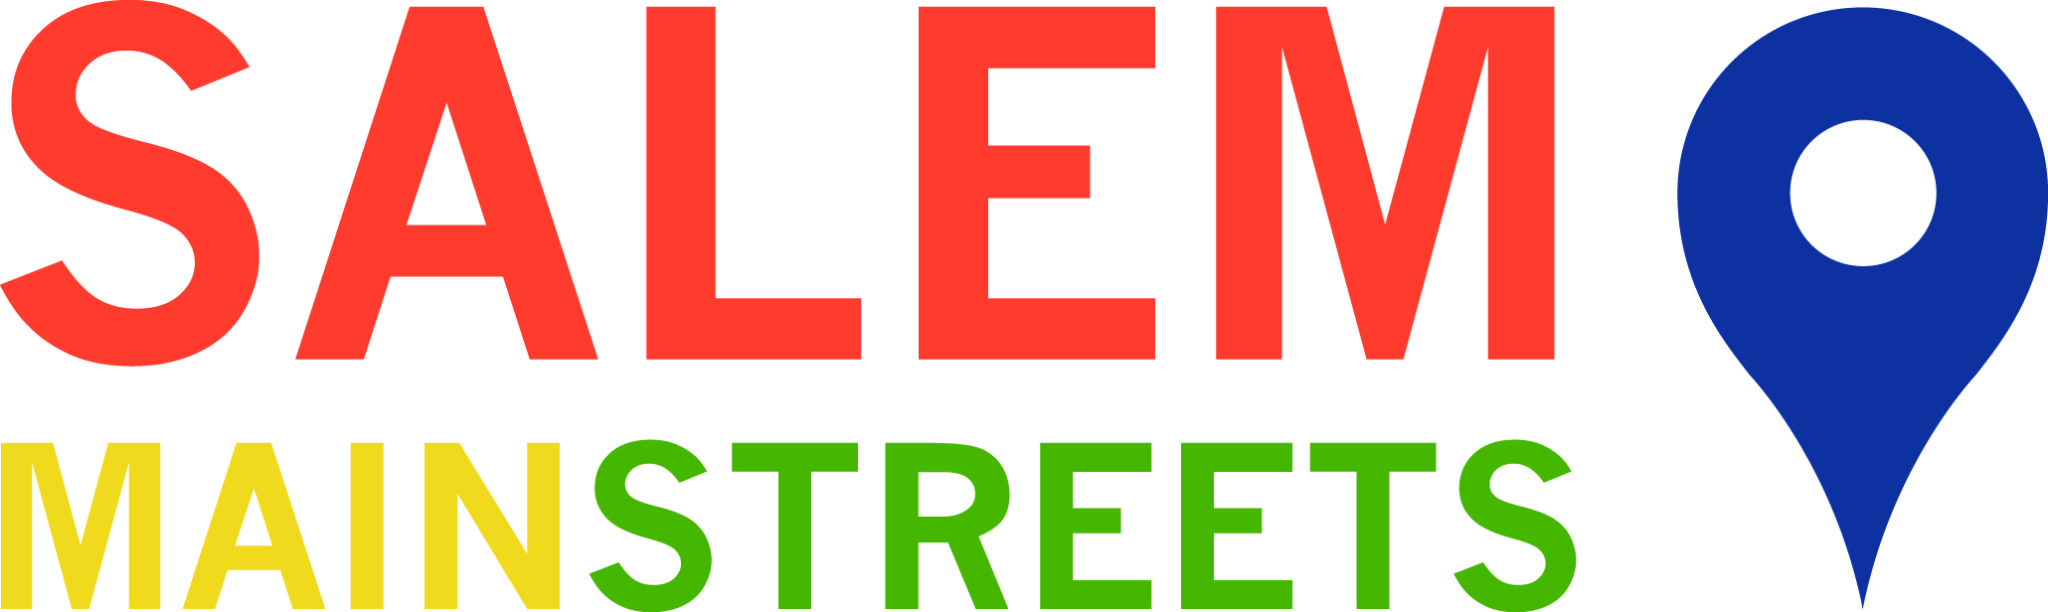 Salem Main Streets Logo